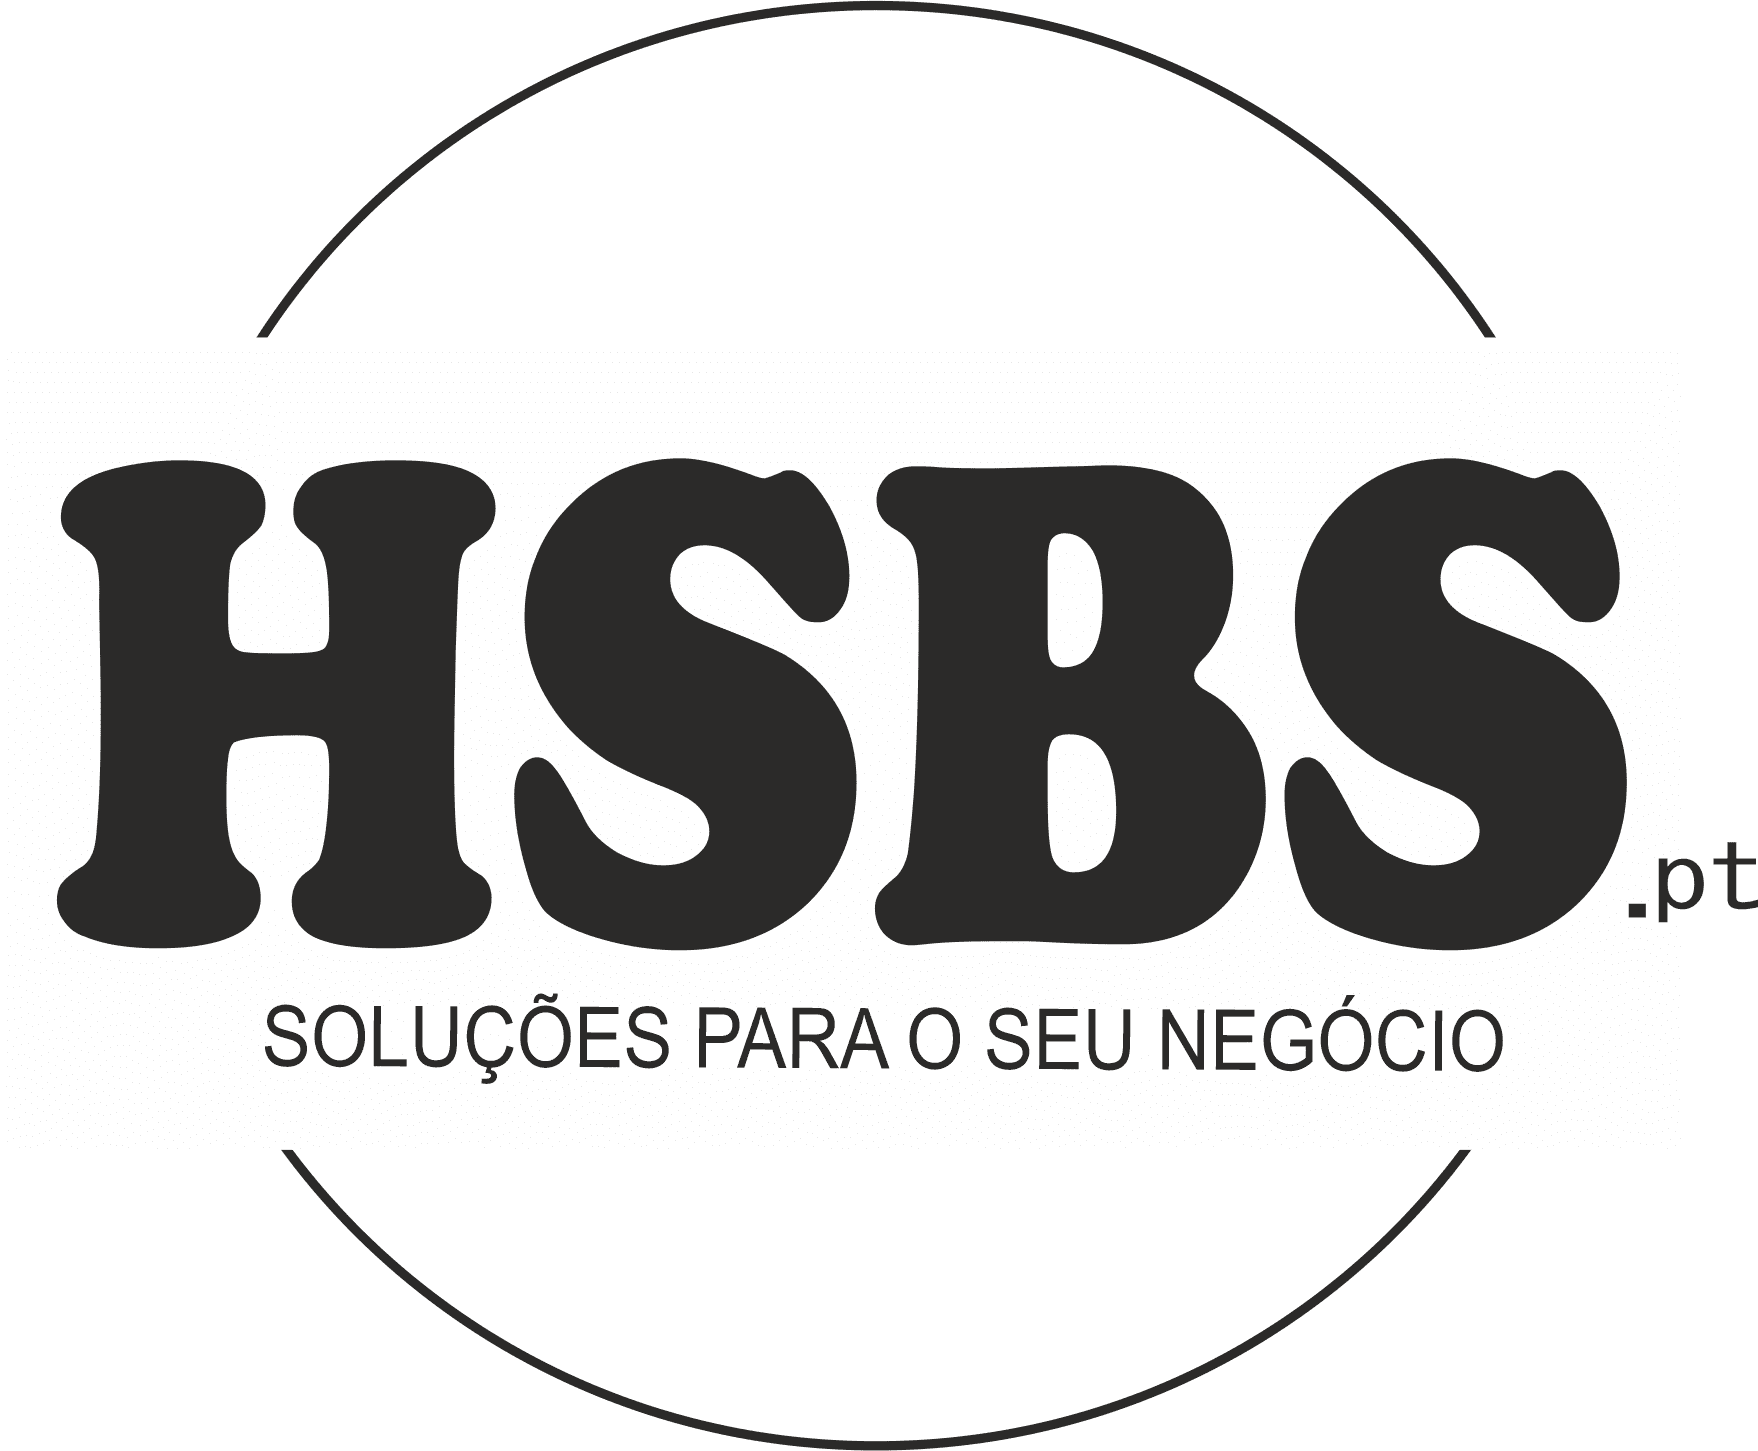 HSBS.pt